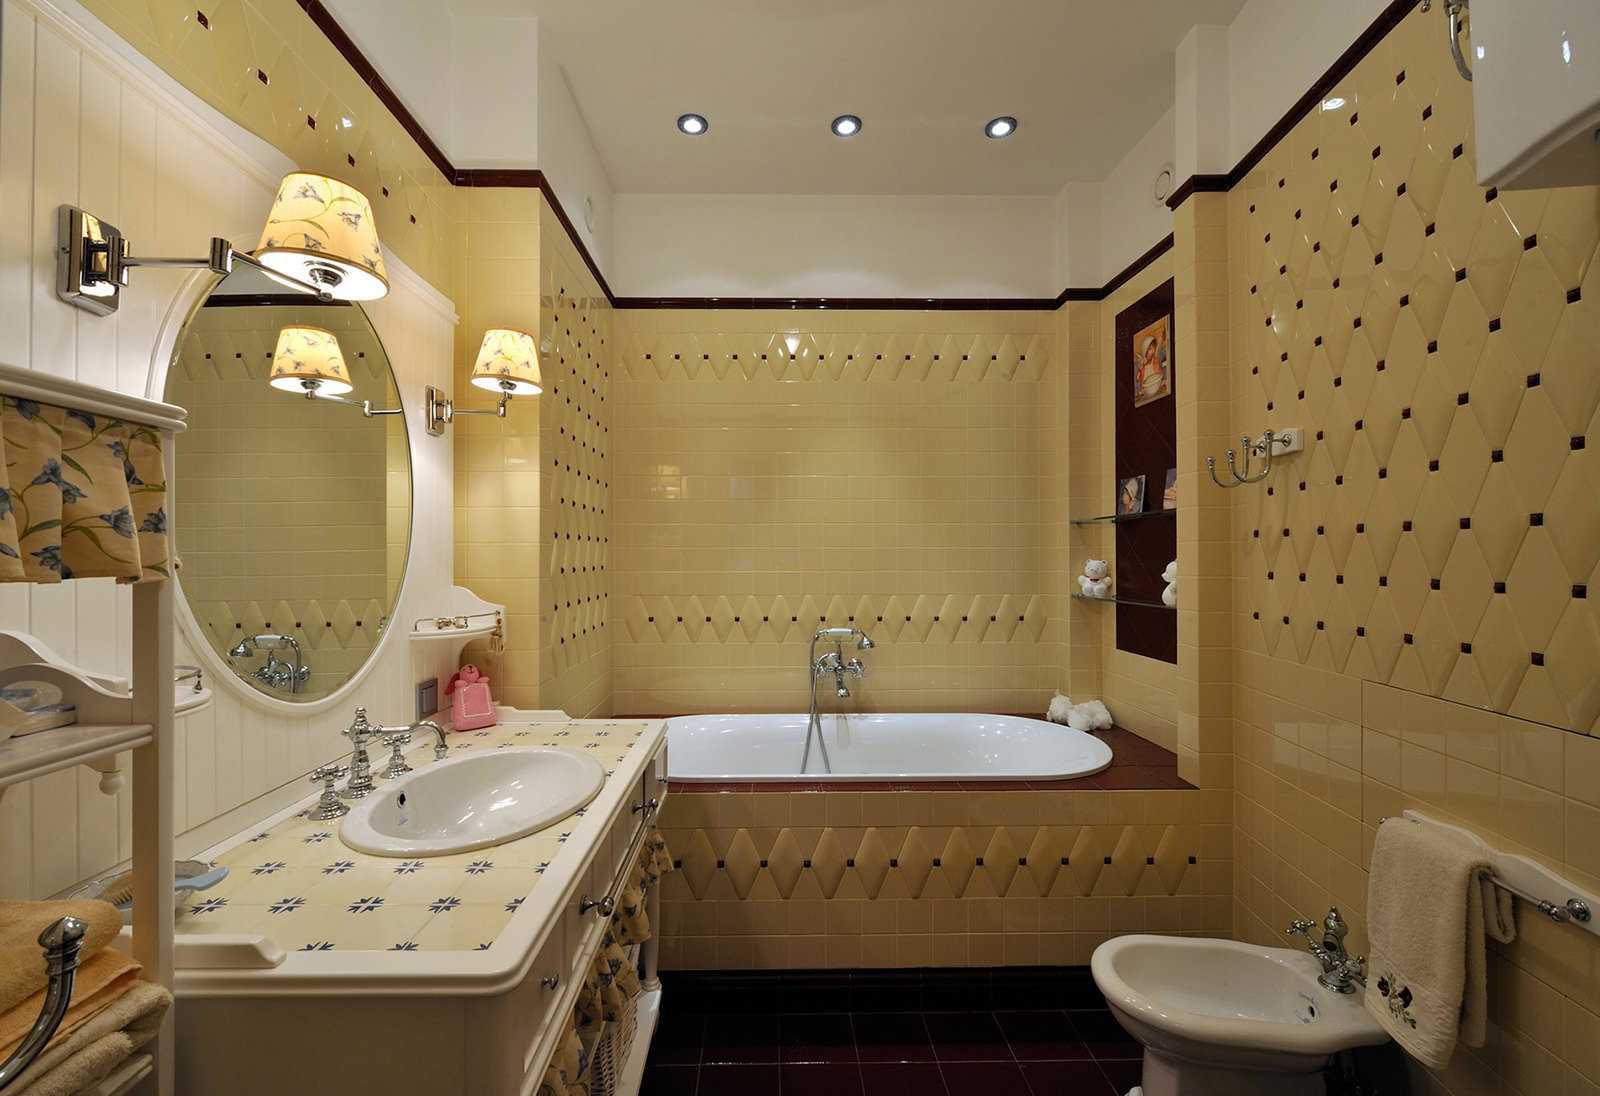 version d'un beau design de la salle de bain dans un style classique